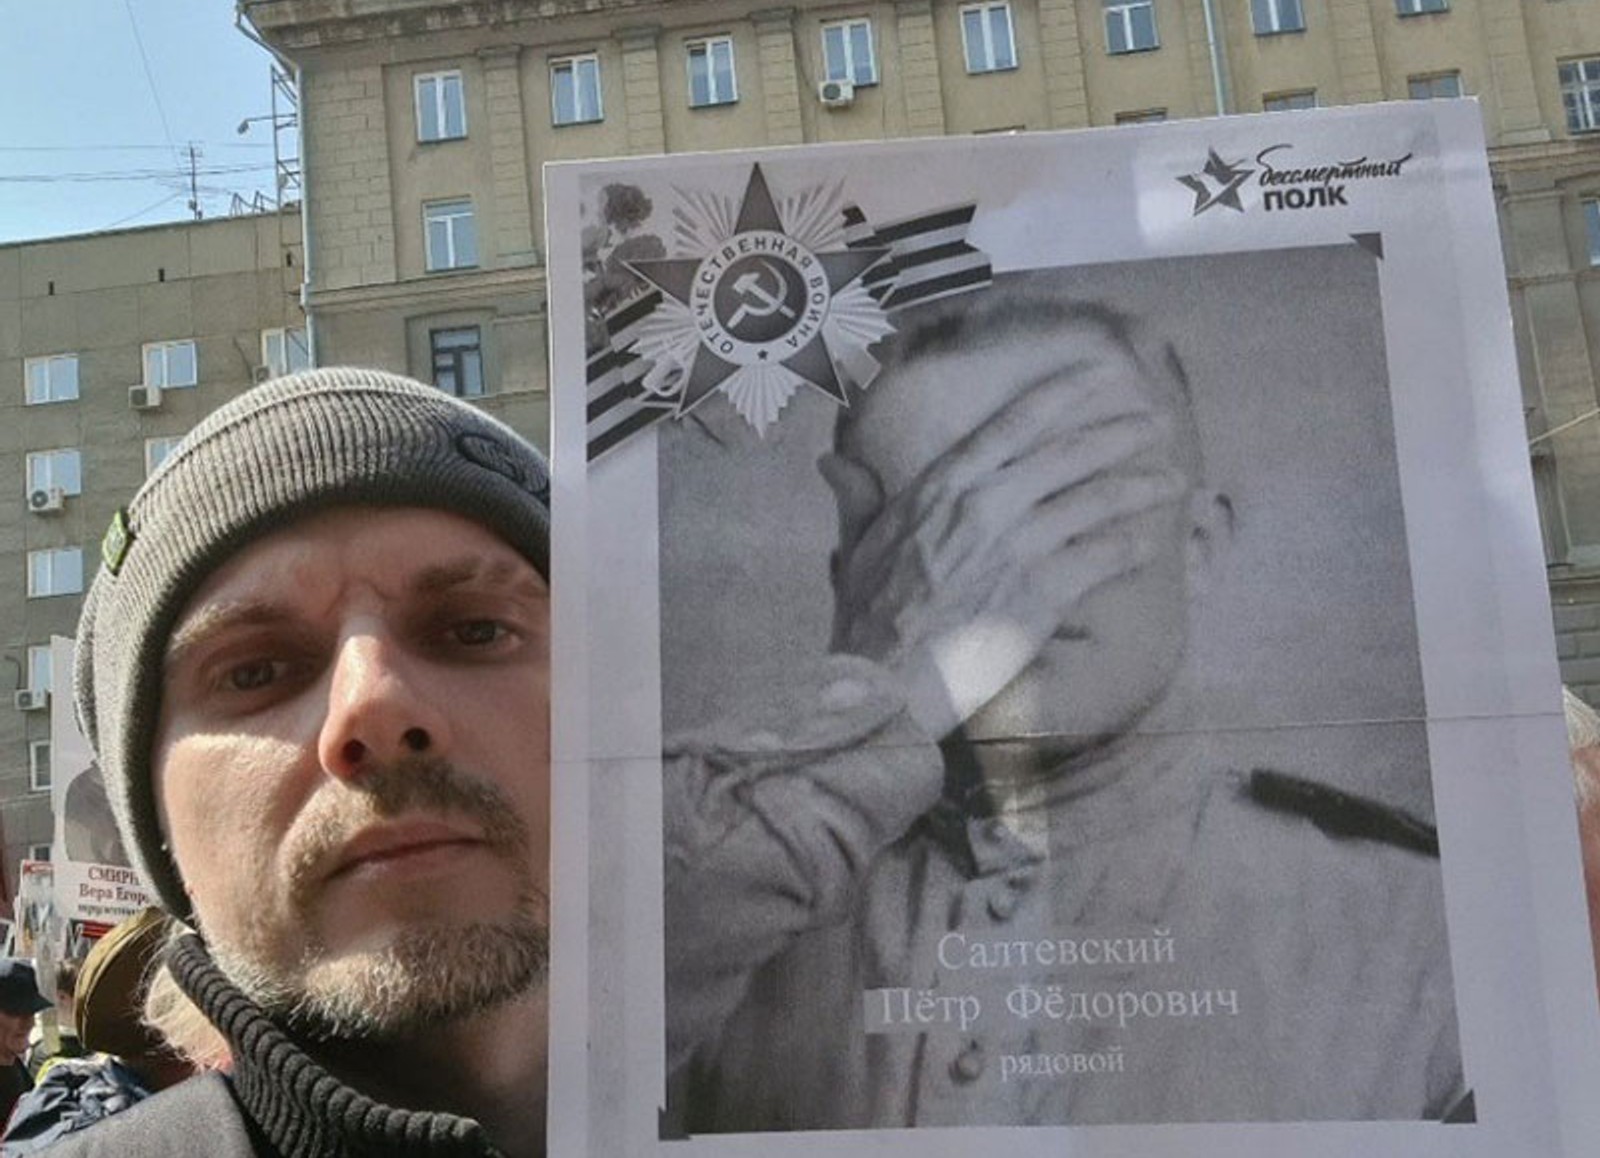 Задержания на акциях 9 мая, салюты в оккупированных городах, удары по Одессе, Бонни и Клайд среди снимков фронтовиков. Главное за день